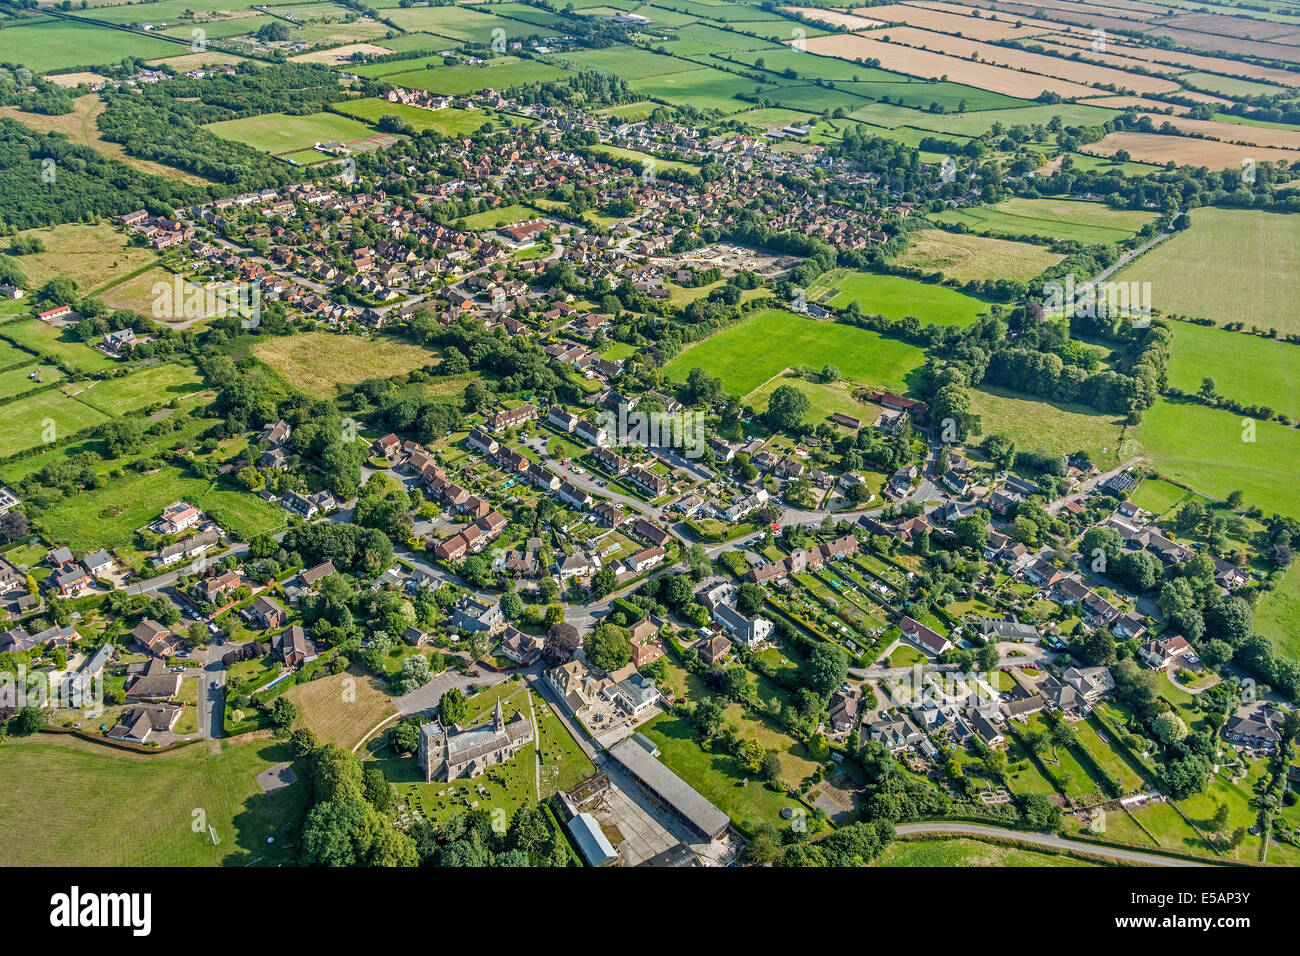 Vista aerea del villaggio di Wanborough vicino a Swindon nel Wiltshire, Inghilterra, Regno Unito sulla vecchia romana Ermin Street o modo. JMH6162 Foto Stock